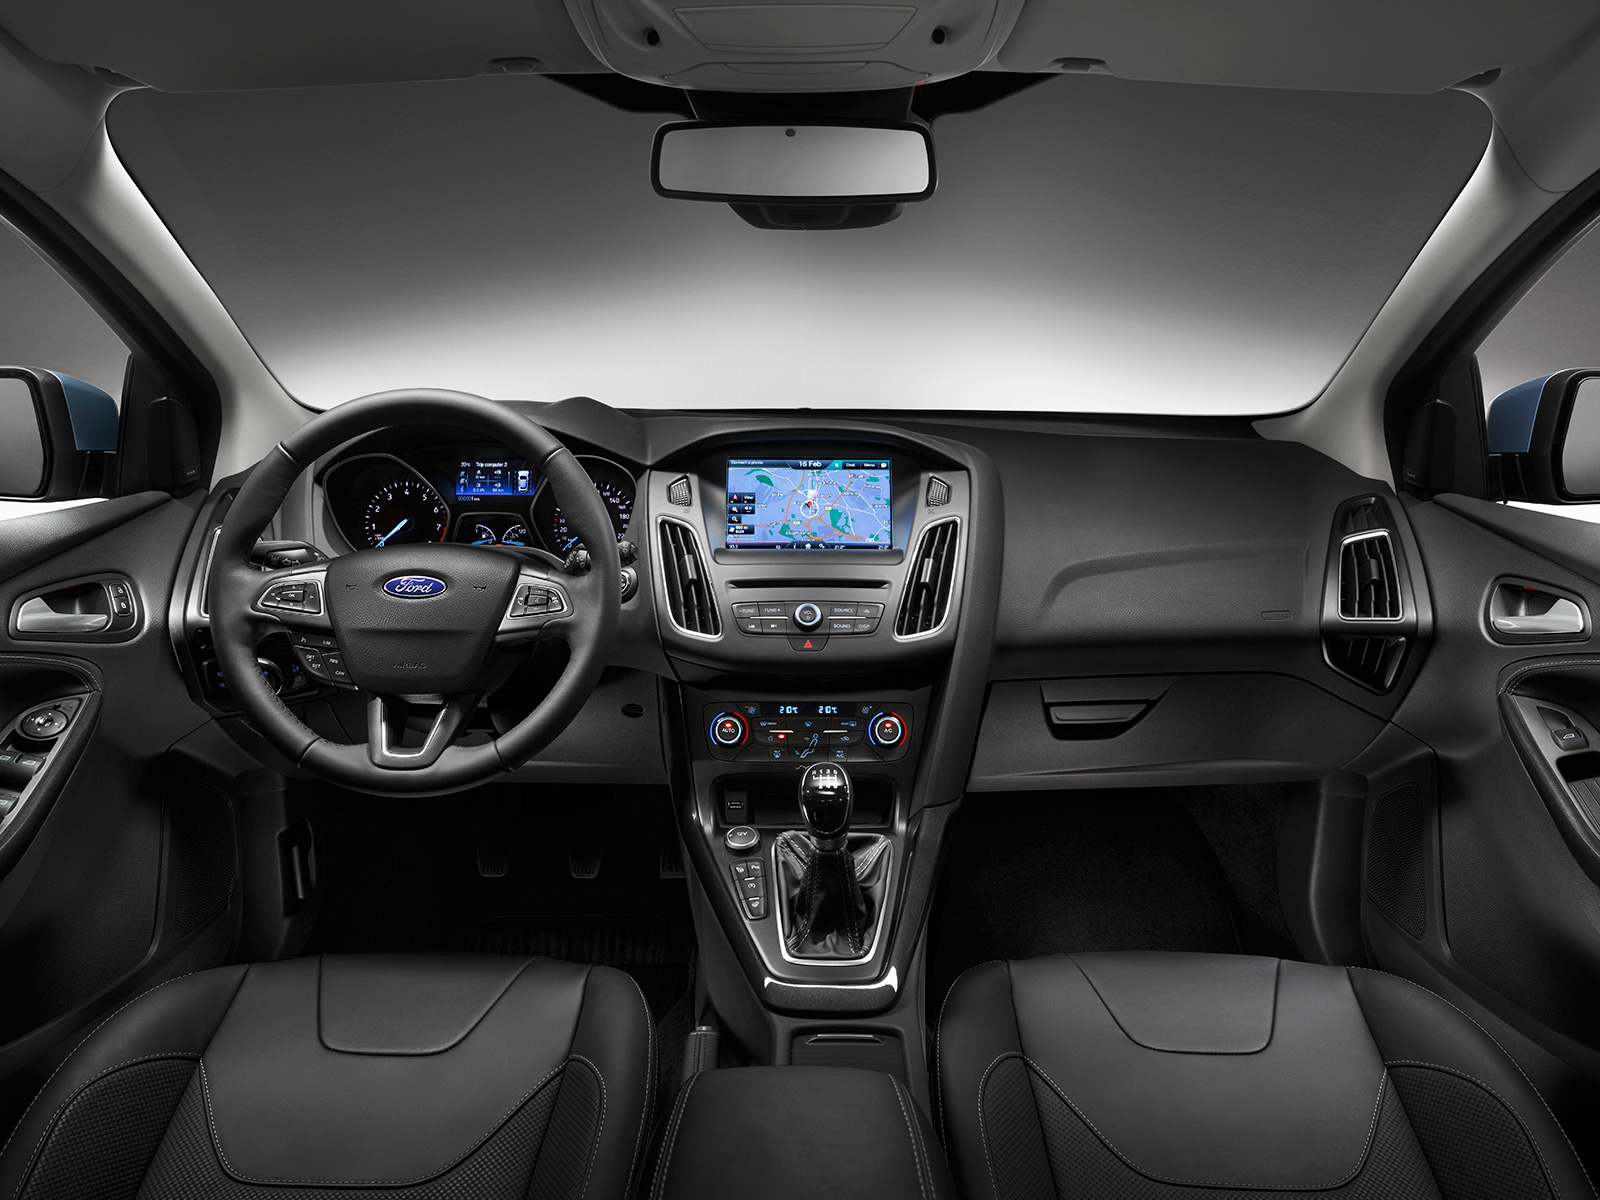 2015 Yeni Kasa Ford Focus Türkiye Fiyatı ve Teknik Özellikleri - Oto Kokpit